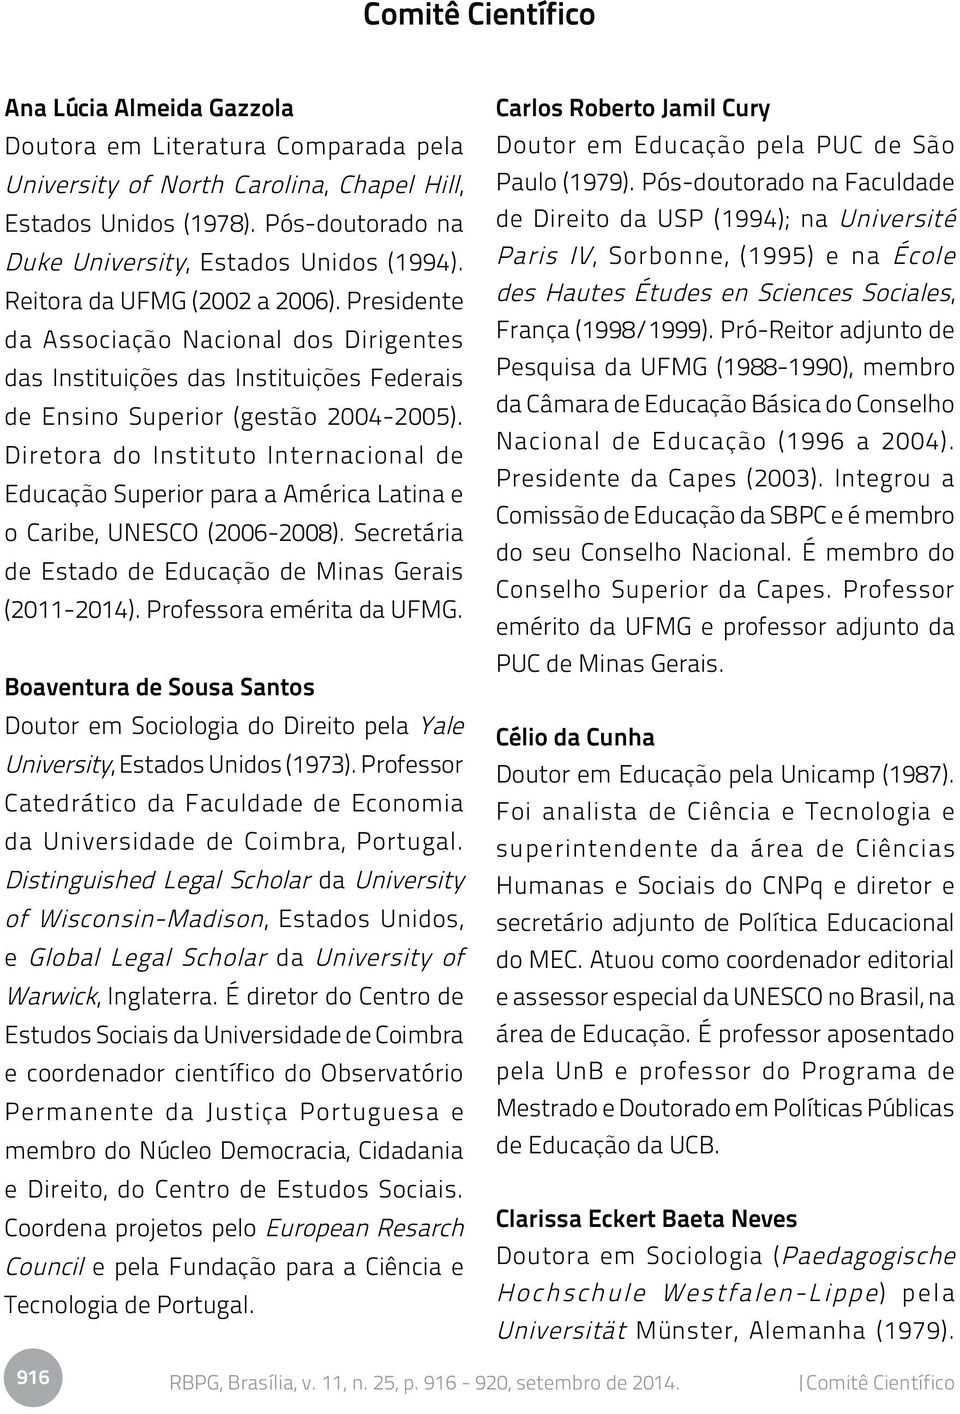 Diretora do Instituto Internacional de Educação Superior para a América Latina e o Caribe, UNESCO (2006-2008). Secretária de Estado de Educação de Minas Gerais (2011-2014). Professora emérita da UFMG.